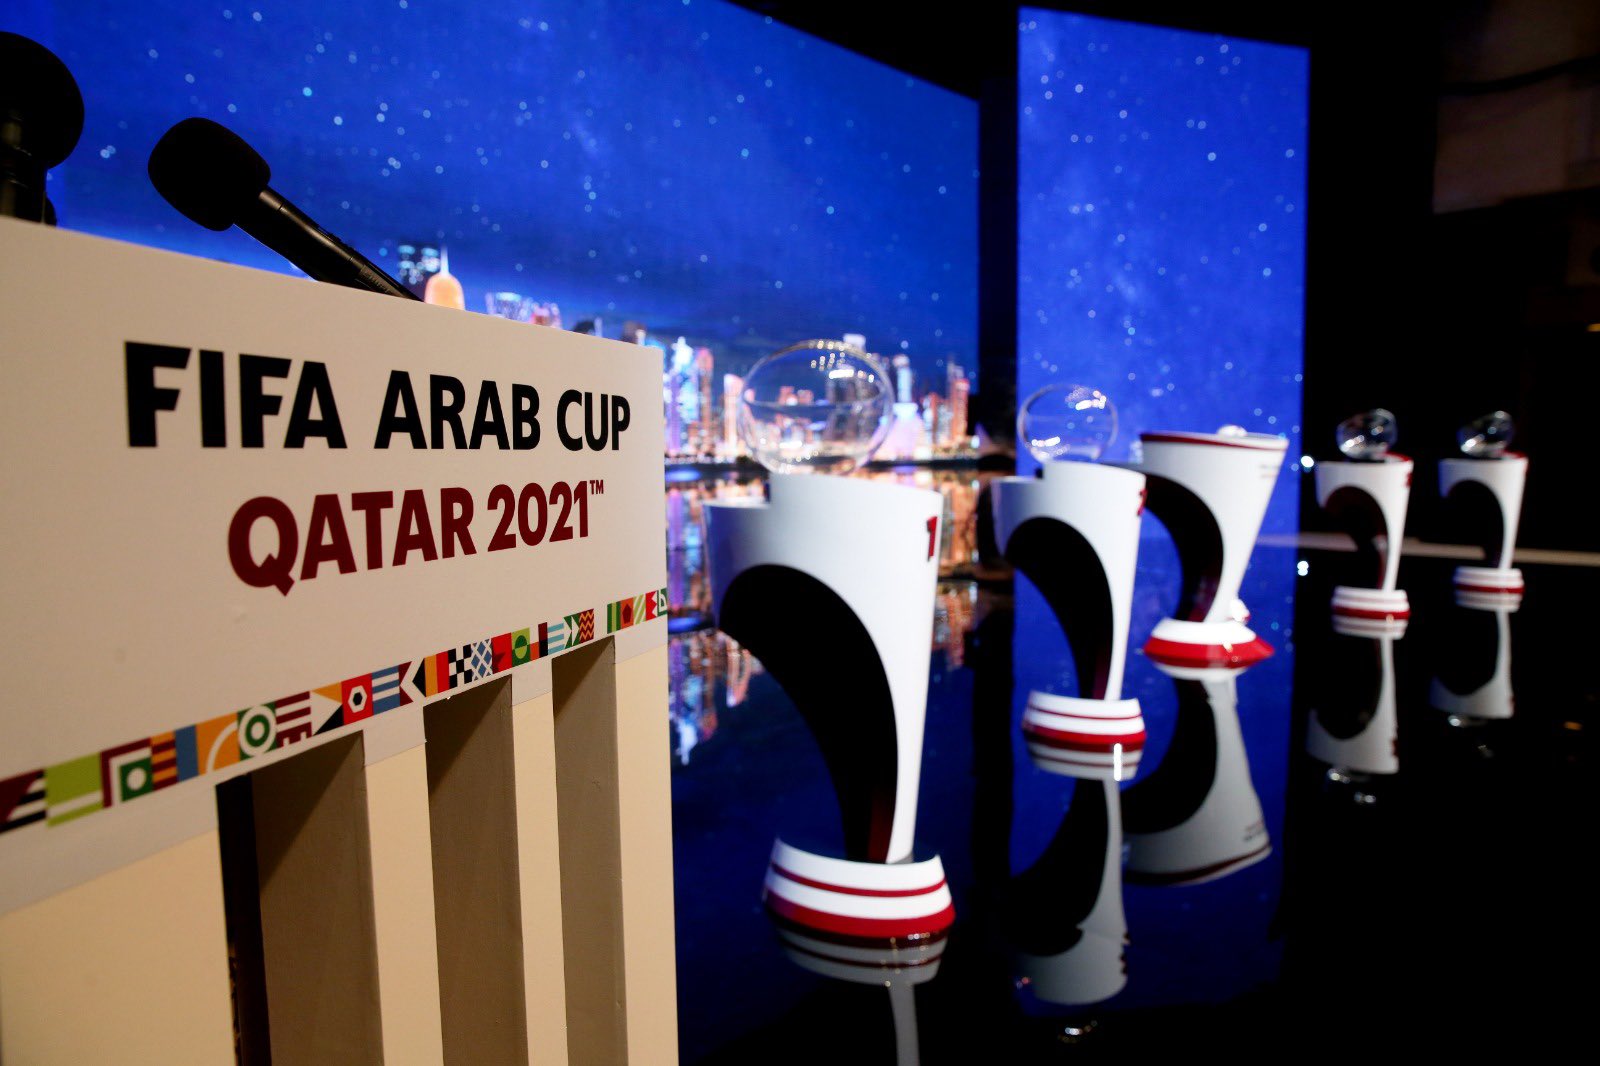 كأس العرب فيفا 2021،قطر2021, Coupe arabe, Coupe arabe de la FIFA 2021, qatar2021, كأس العرب ,قرعة كأس العرب فيفا2021, Maroc, المنتخب الوطني